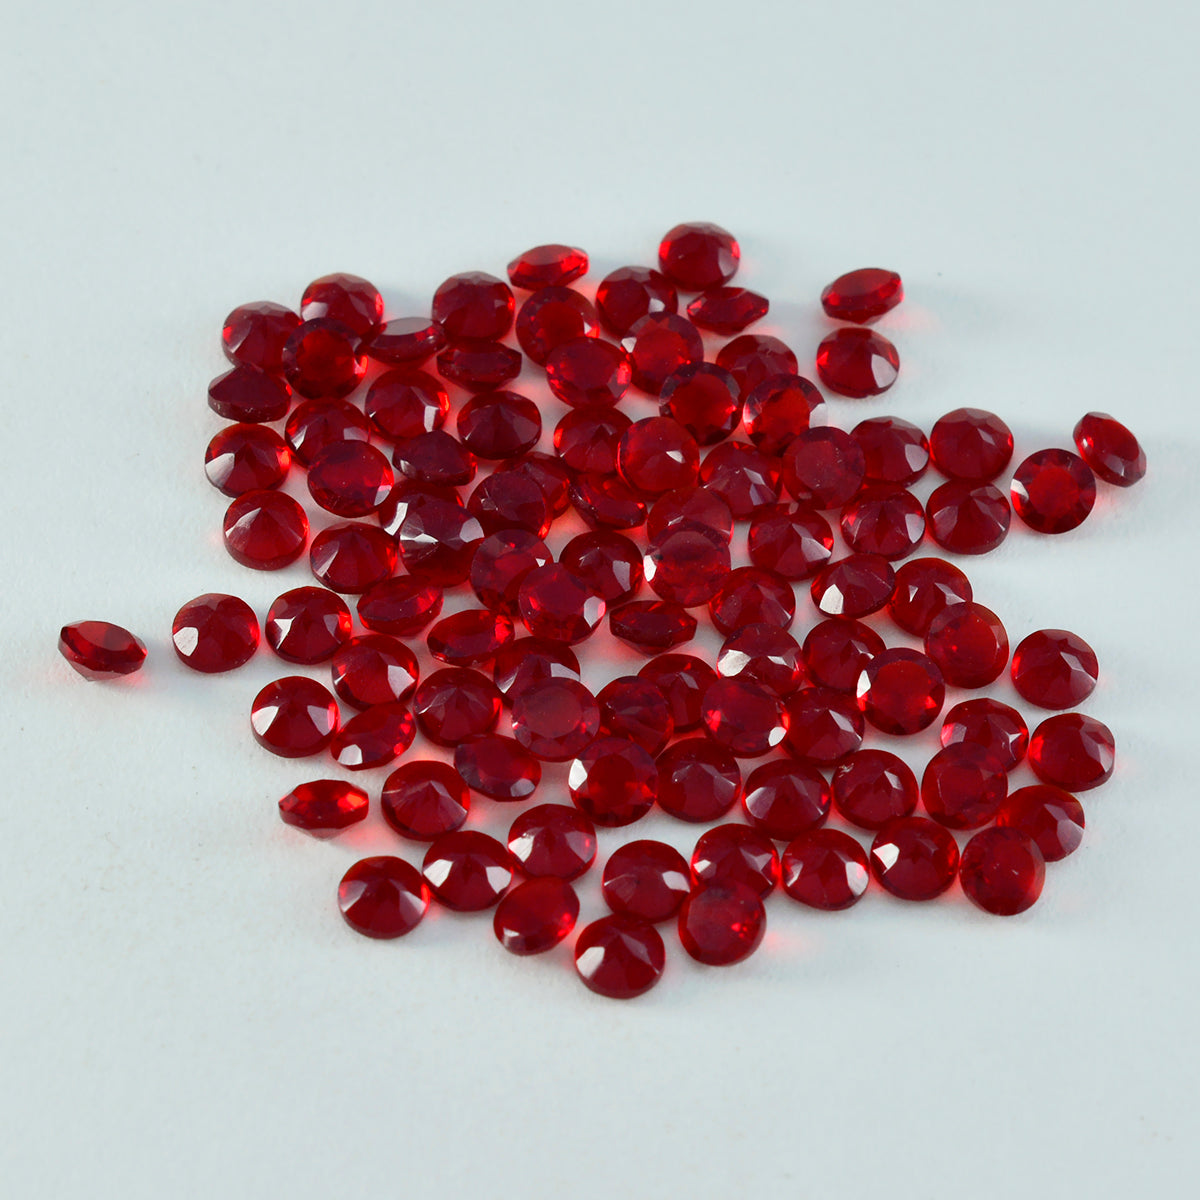 Riyogems 1 pieza de rubí rojo cz facetado 3x3 mm forma redonda a+ gemas de calidad